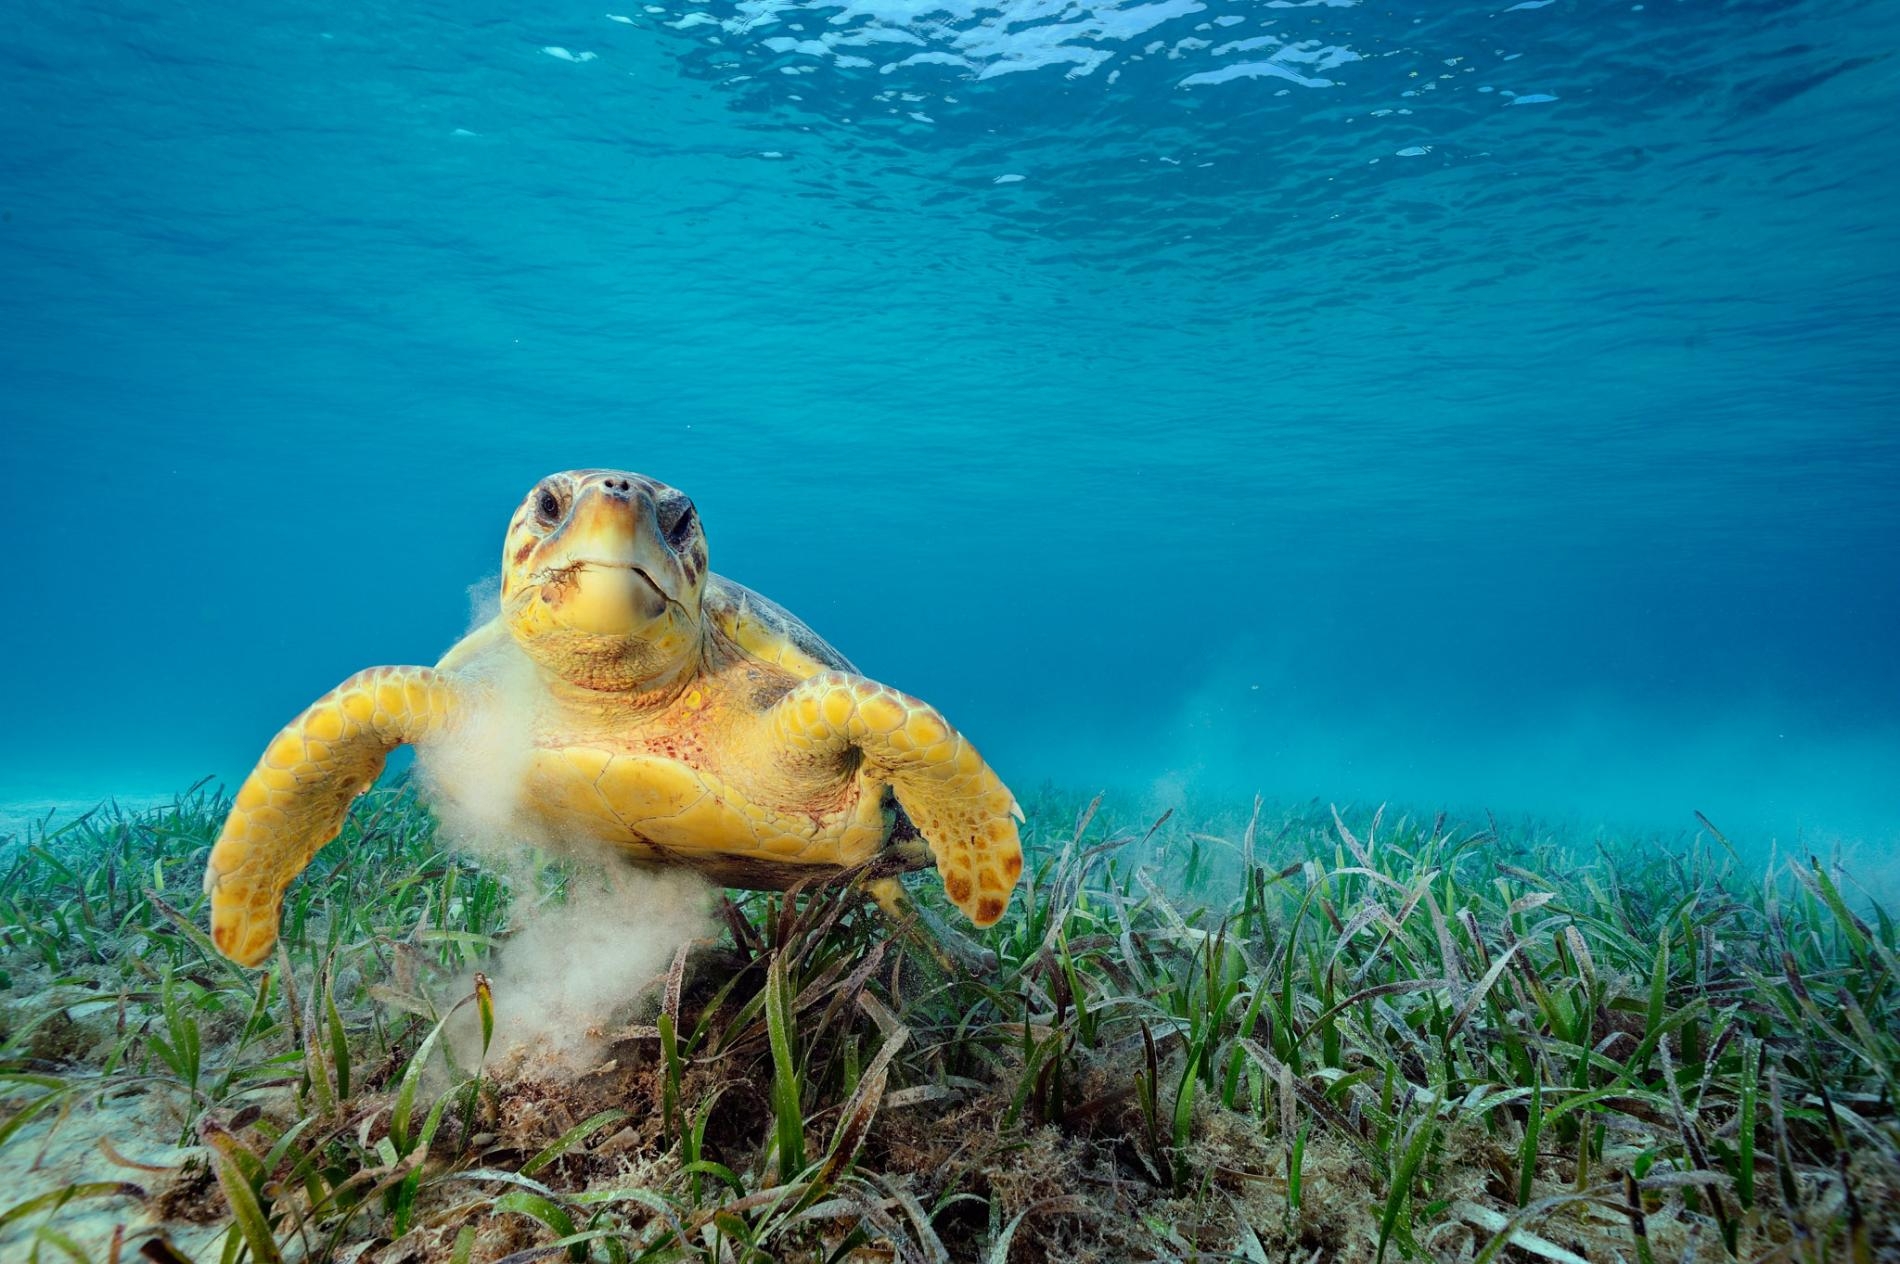 一隻赤蠵龜在吃海草。這種動物會攪起海床泥沙，能將數萬隻搭便車的微小動物載到自己身上，例如線蟲、甲殼類、水螅。PHOTOGRAPH BY BRIAN SKERRY, NAT GEO IMAGE COLLECTION